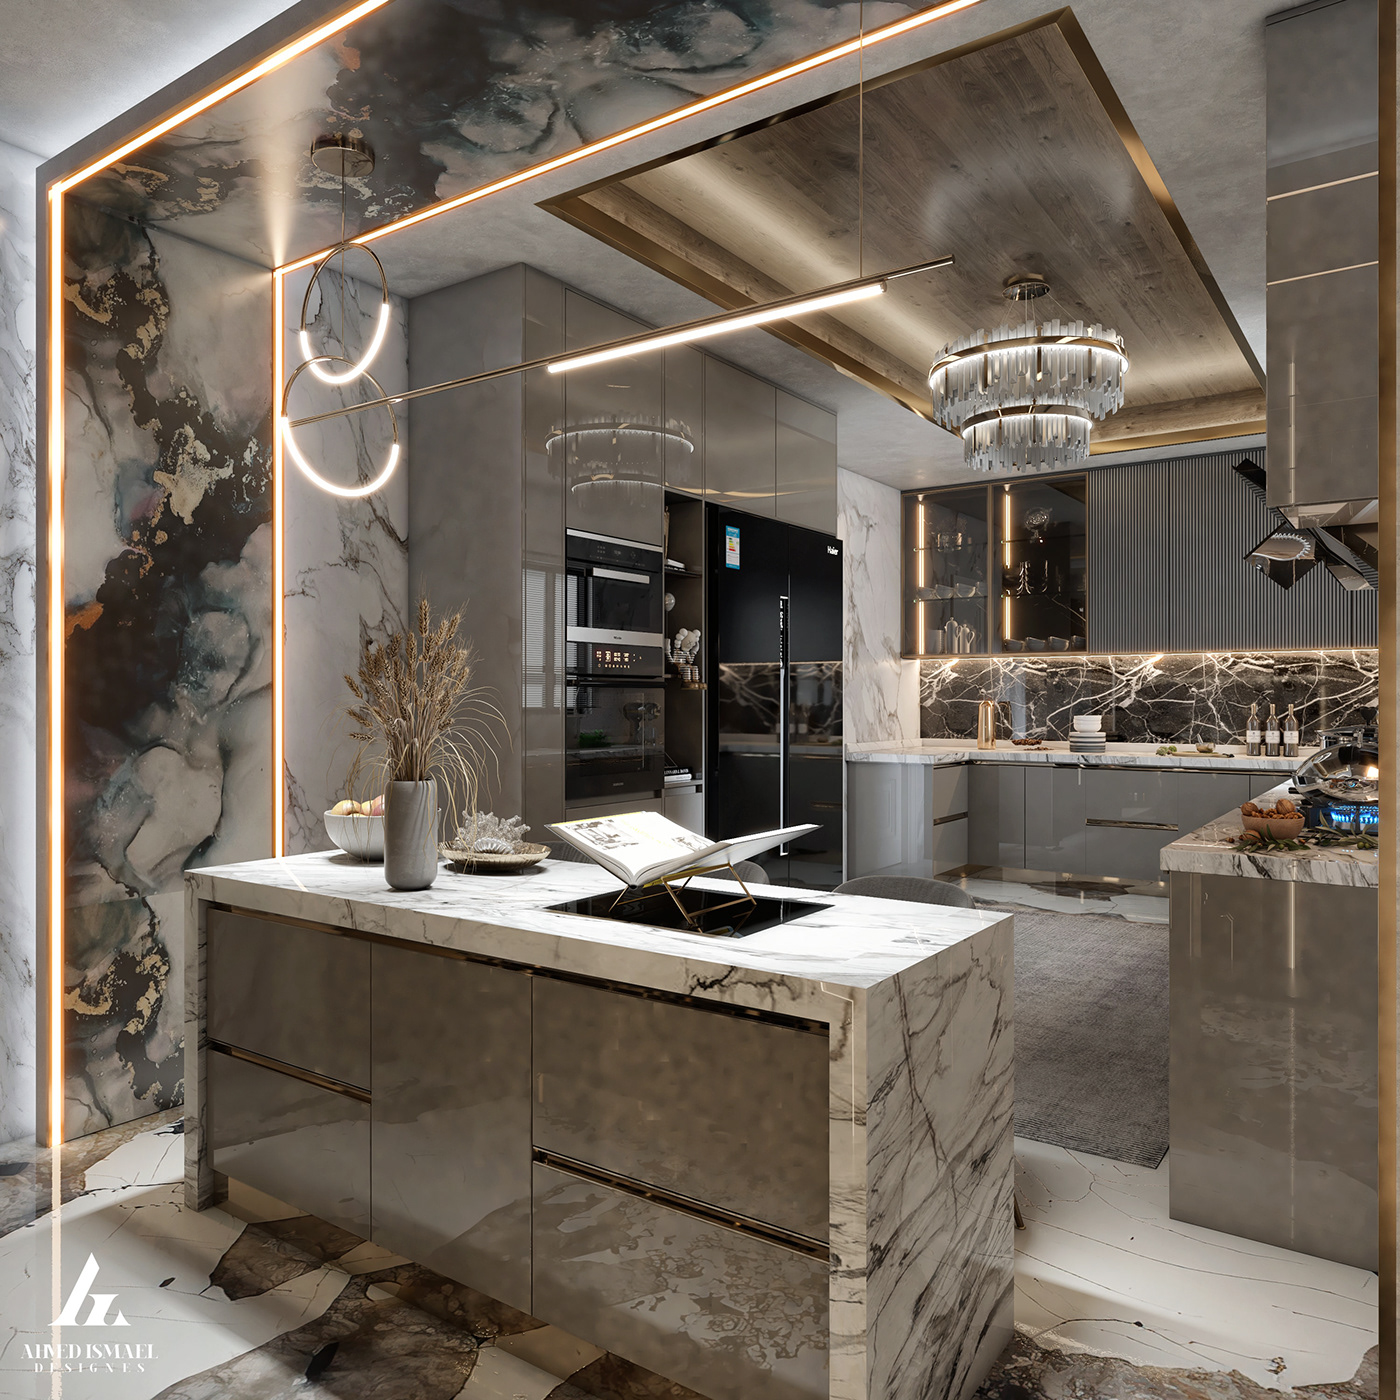 3D 3ds max architecture design interior design  kitchen modern Render visualization vray